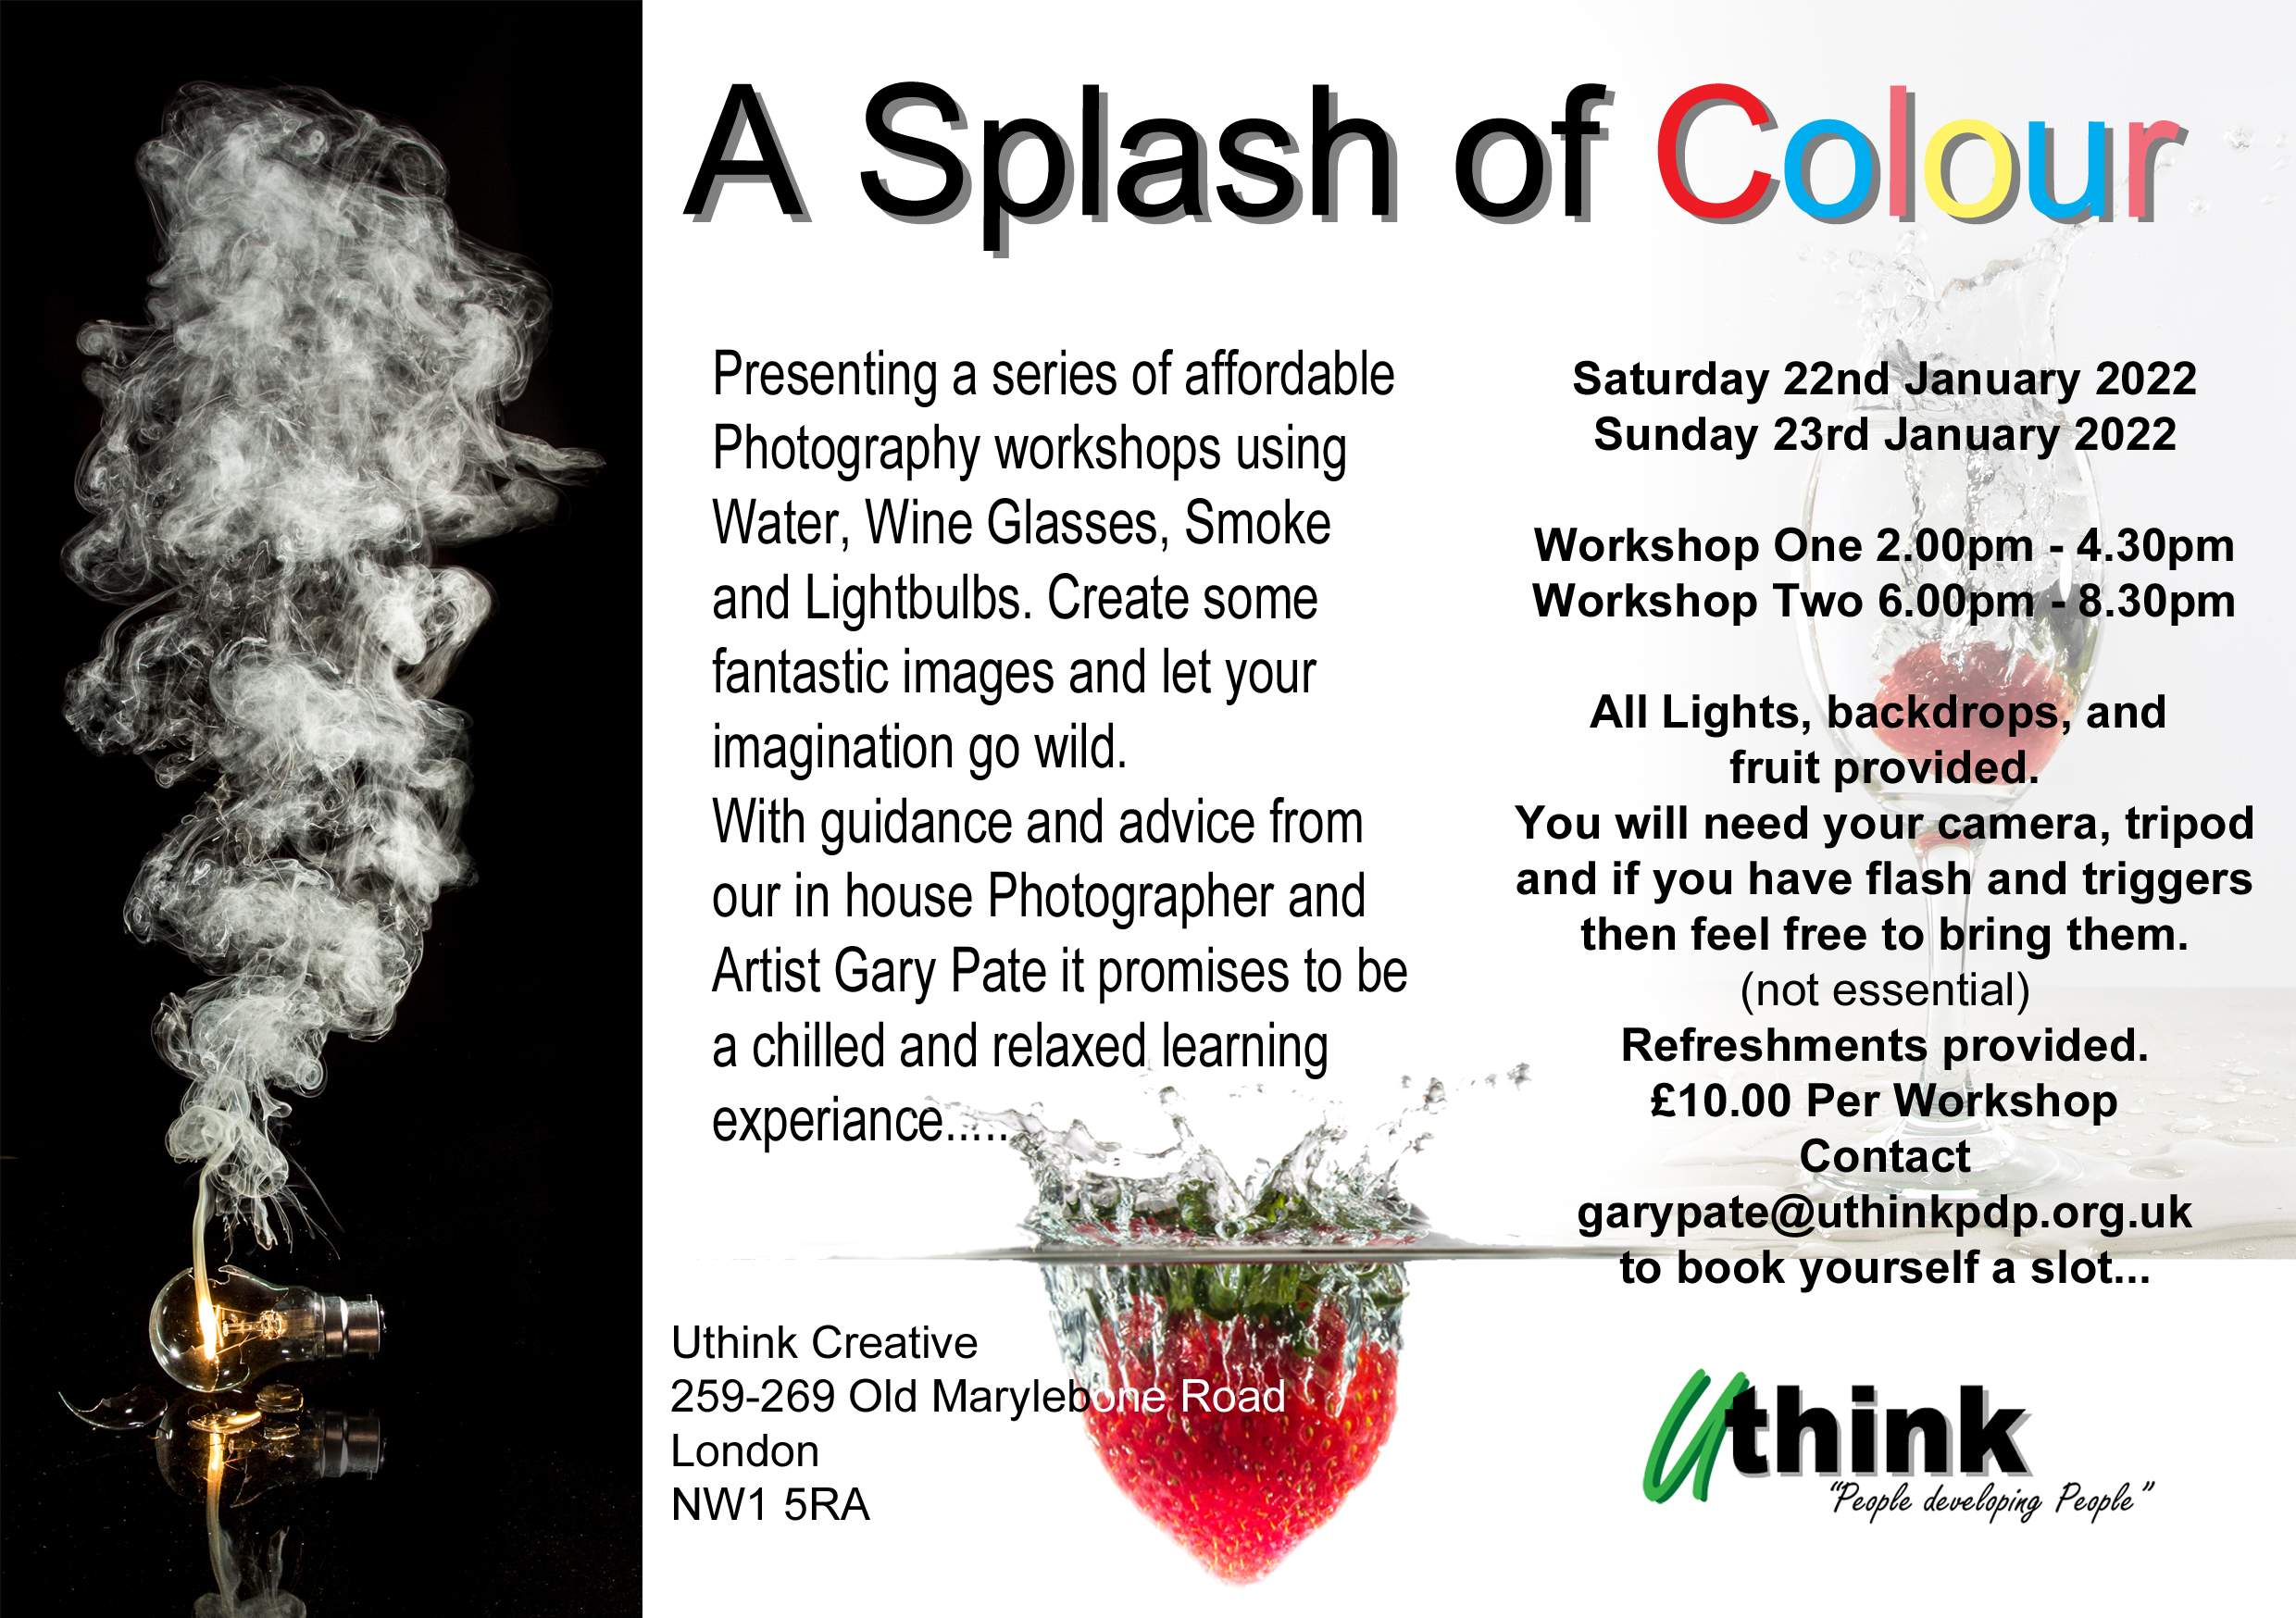 Image A Splash of Colour workshops